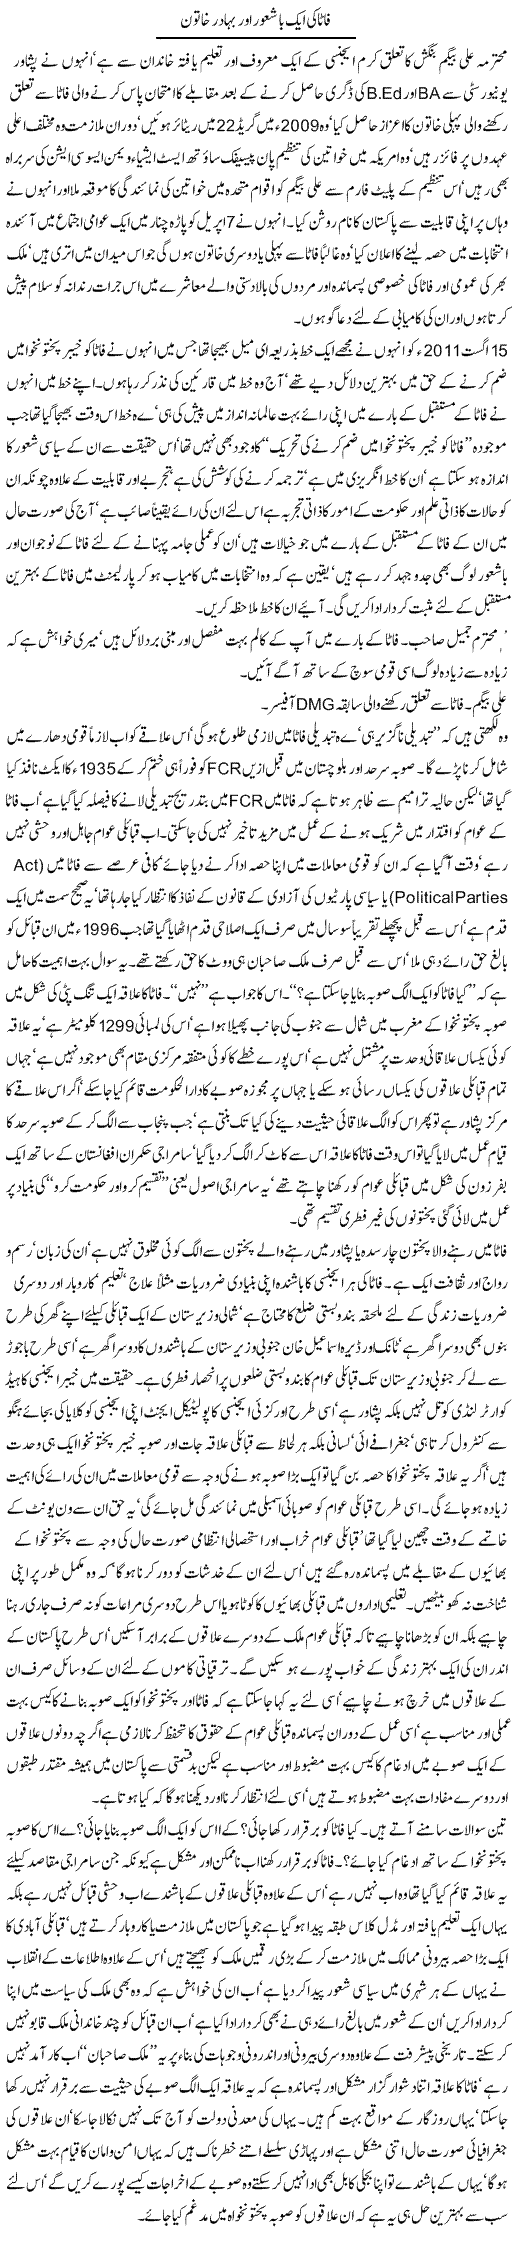 Fata Ki Aik Bashaour Aur Bahadur Khatoon | Jamil Marghuz | Daily Urdu Columns